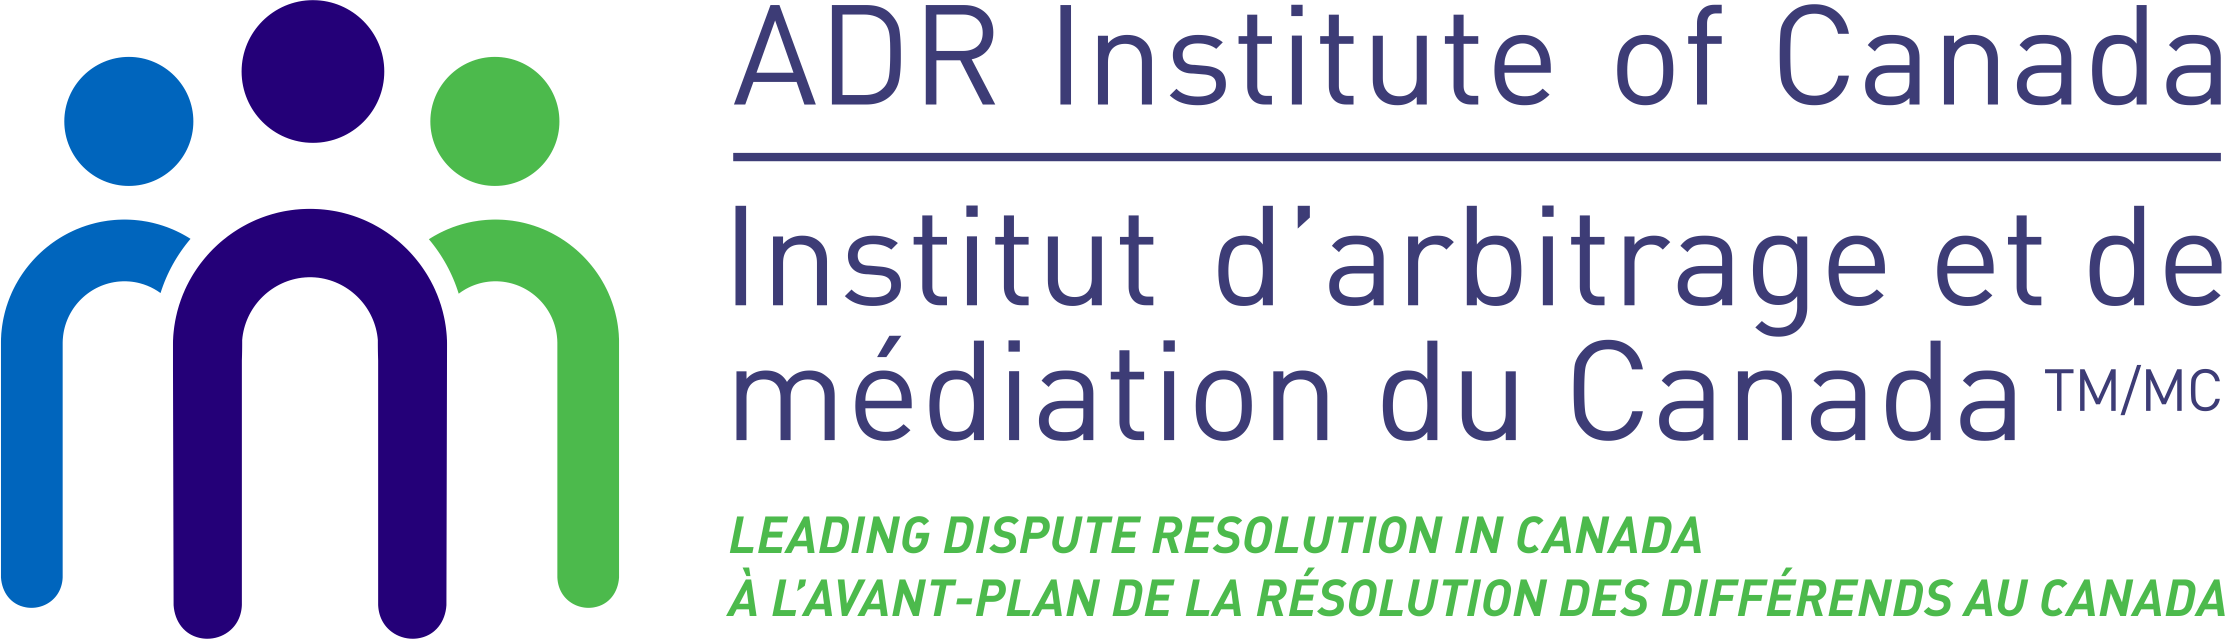 ADRIC Events | ADR Institute of Canada